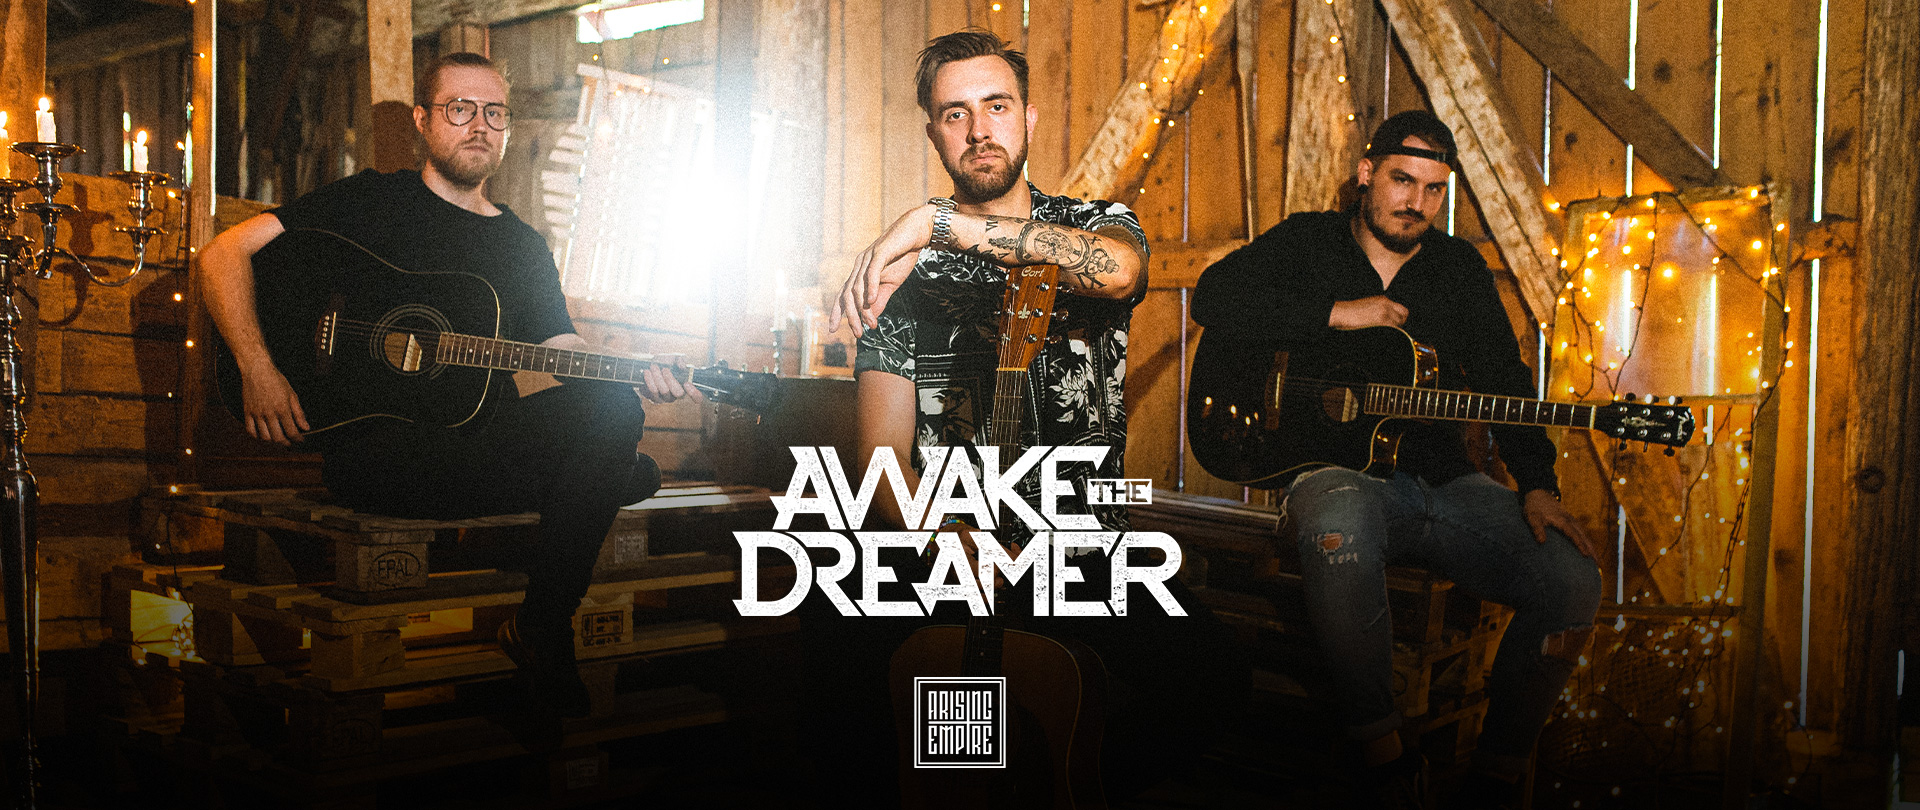 Awake The Dreamer at Arising Empire • Offizieller Online Shop